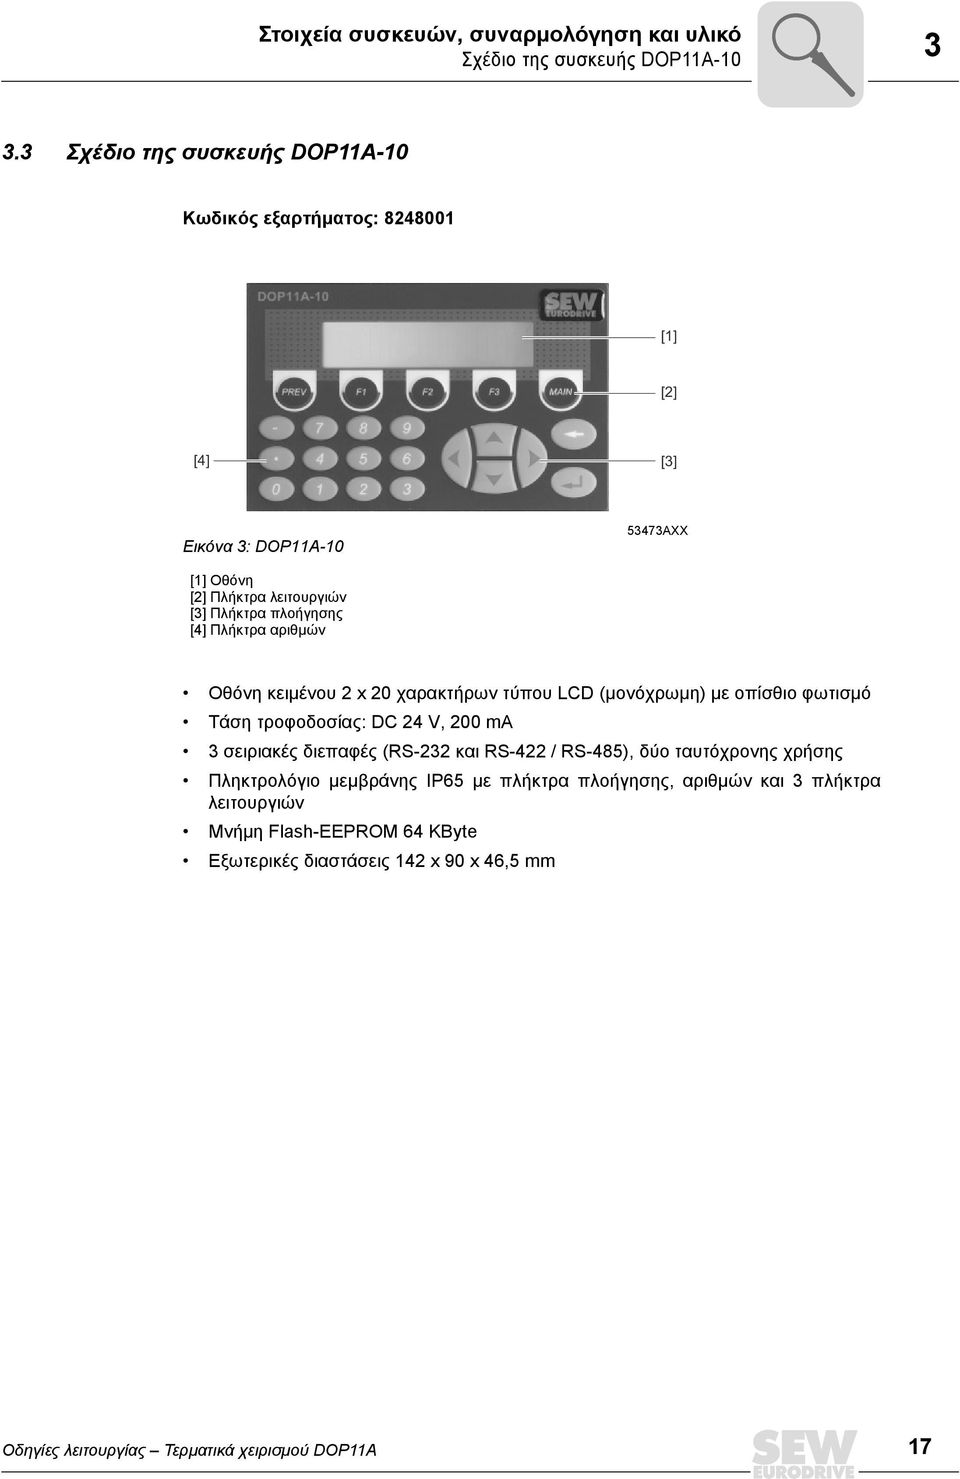 πλοήγησης [4] Πλήκτρα αριθμών Οθόνη κειμένου 2 x 20 χαρακτήρων τύπου LCD (μονόχρωμη) με οπίσθιο φωτισμό Τάση τροφοδοσίας: DC 24 V, 200 ma 3 σειριακές διεπαφές